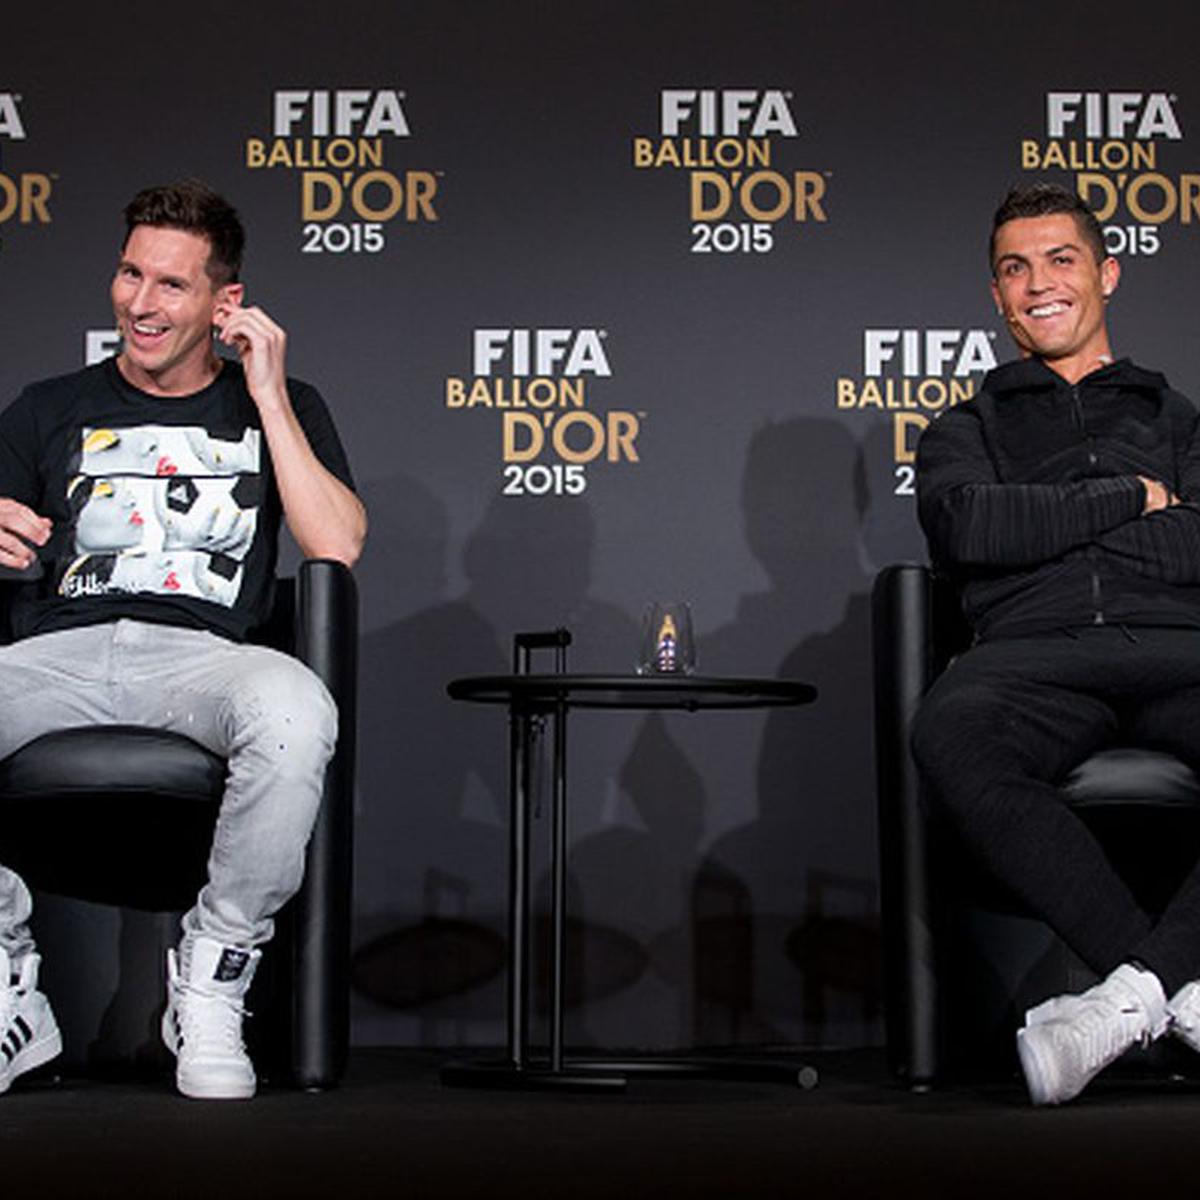 El backstage de la foto de Messi y Cristiano Ronaldo juntos para